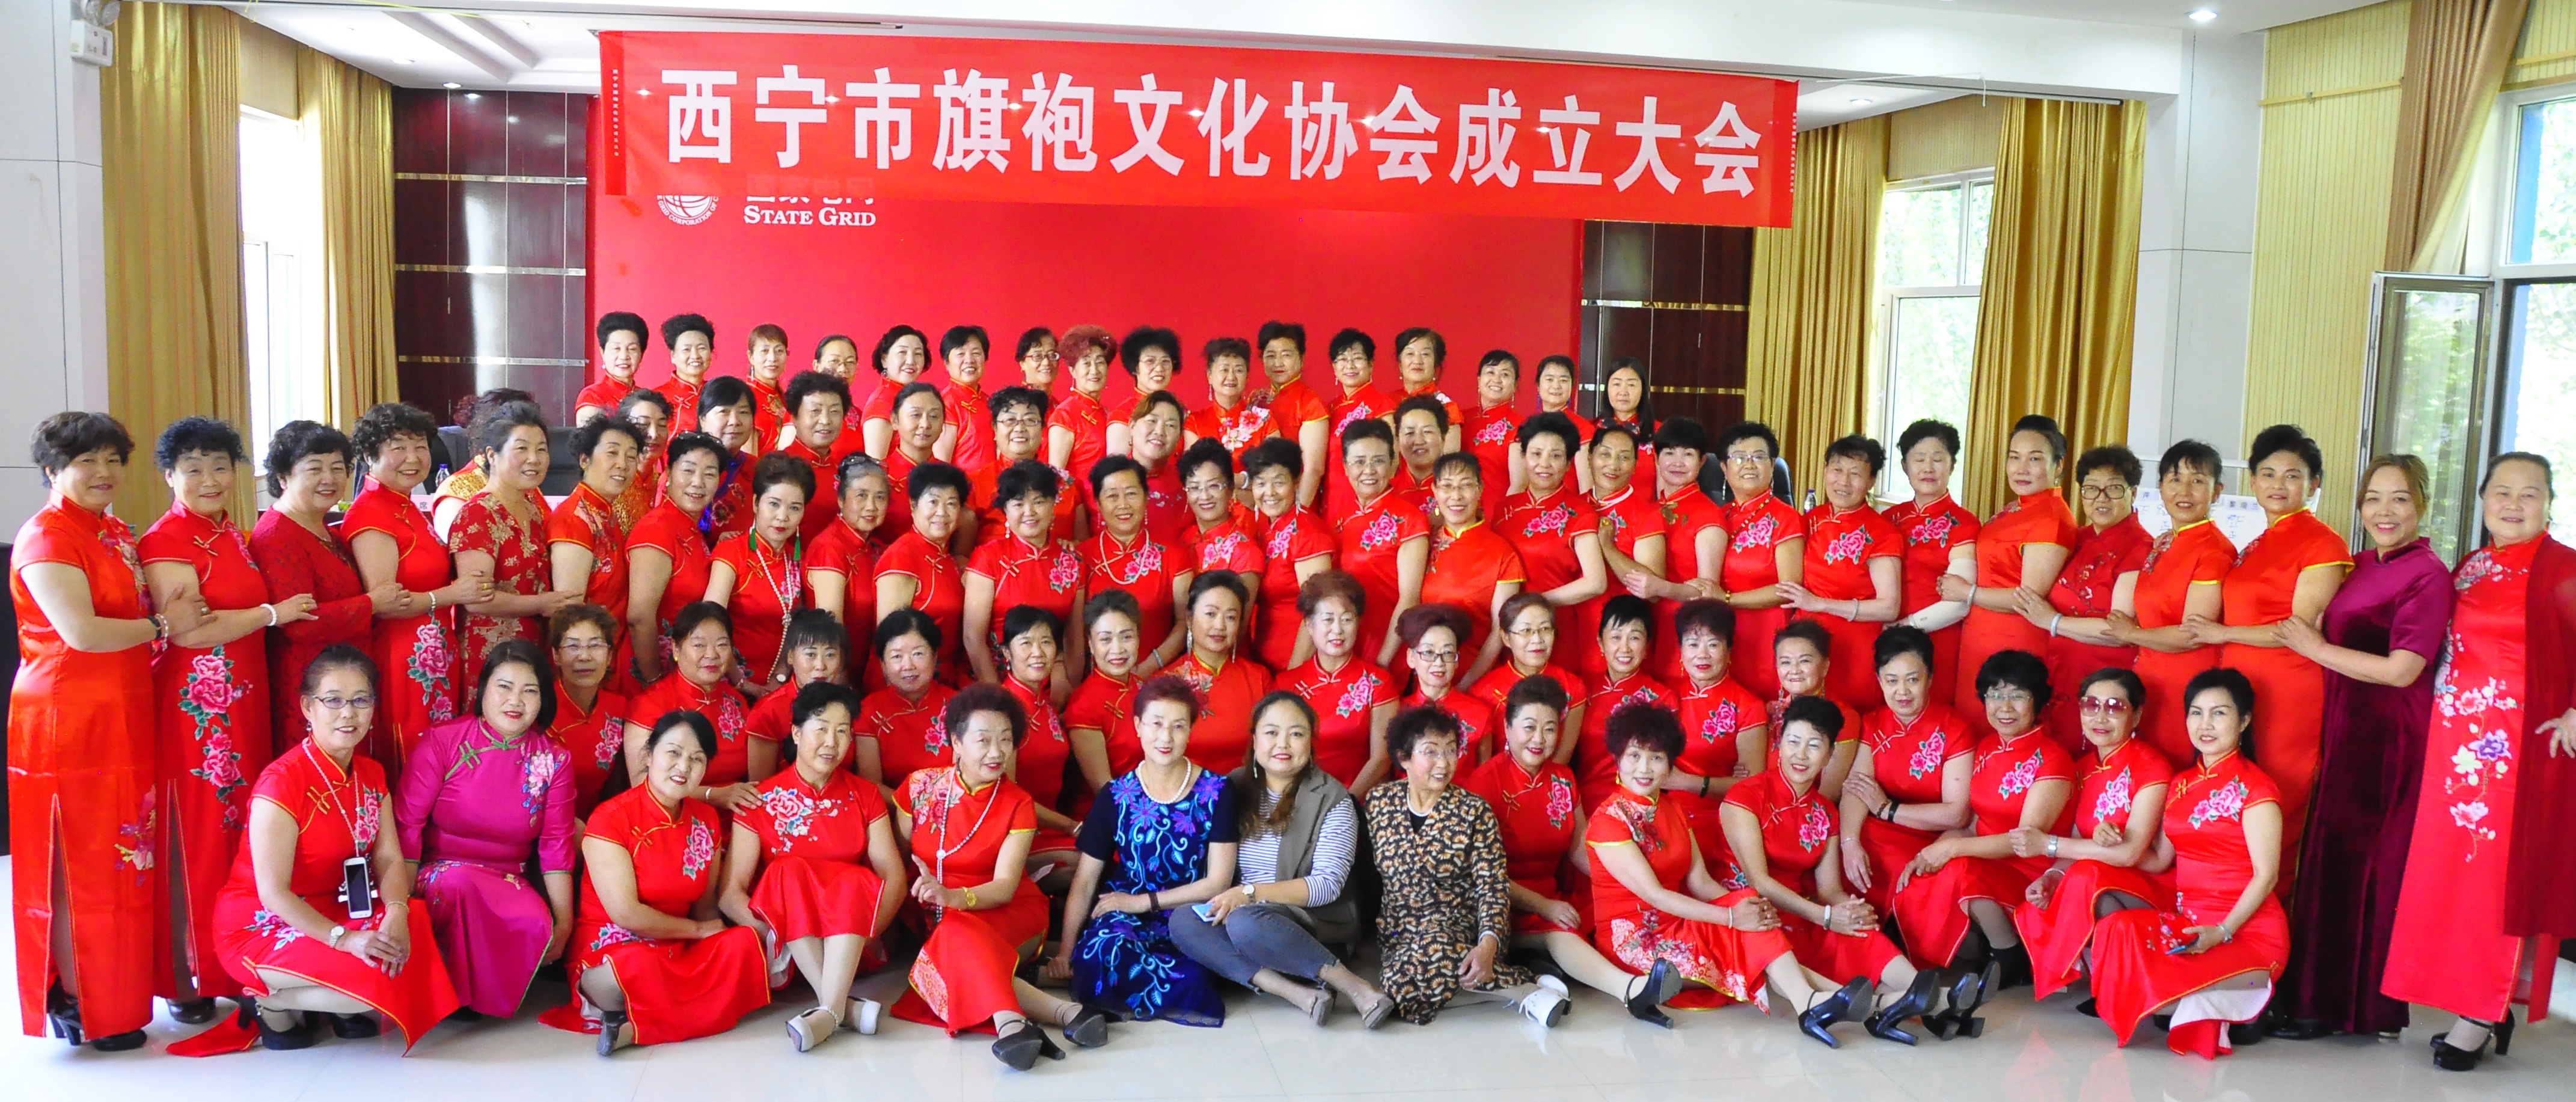 弘扬优秀传统 展示旗袍文化 西宁市旗袍文化协会成立